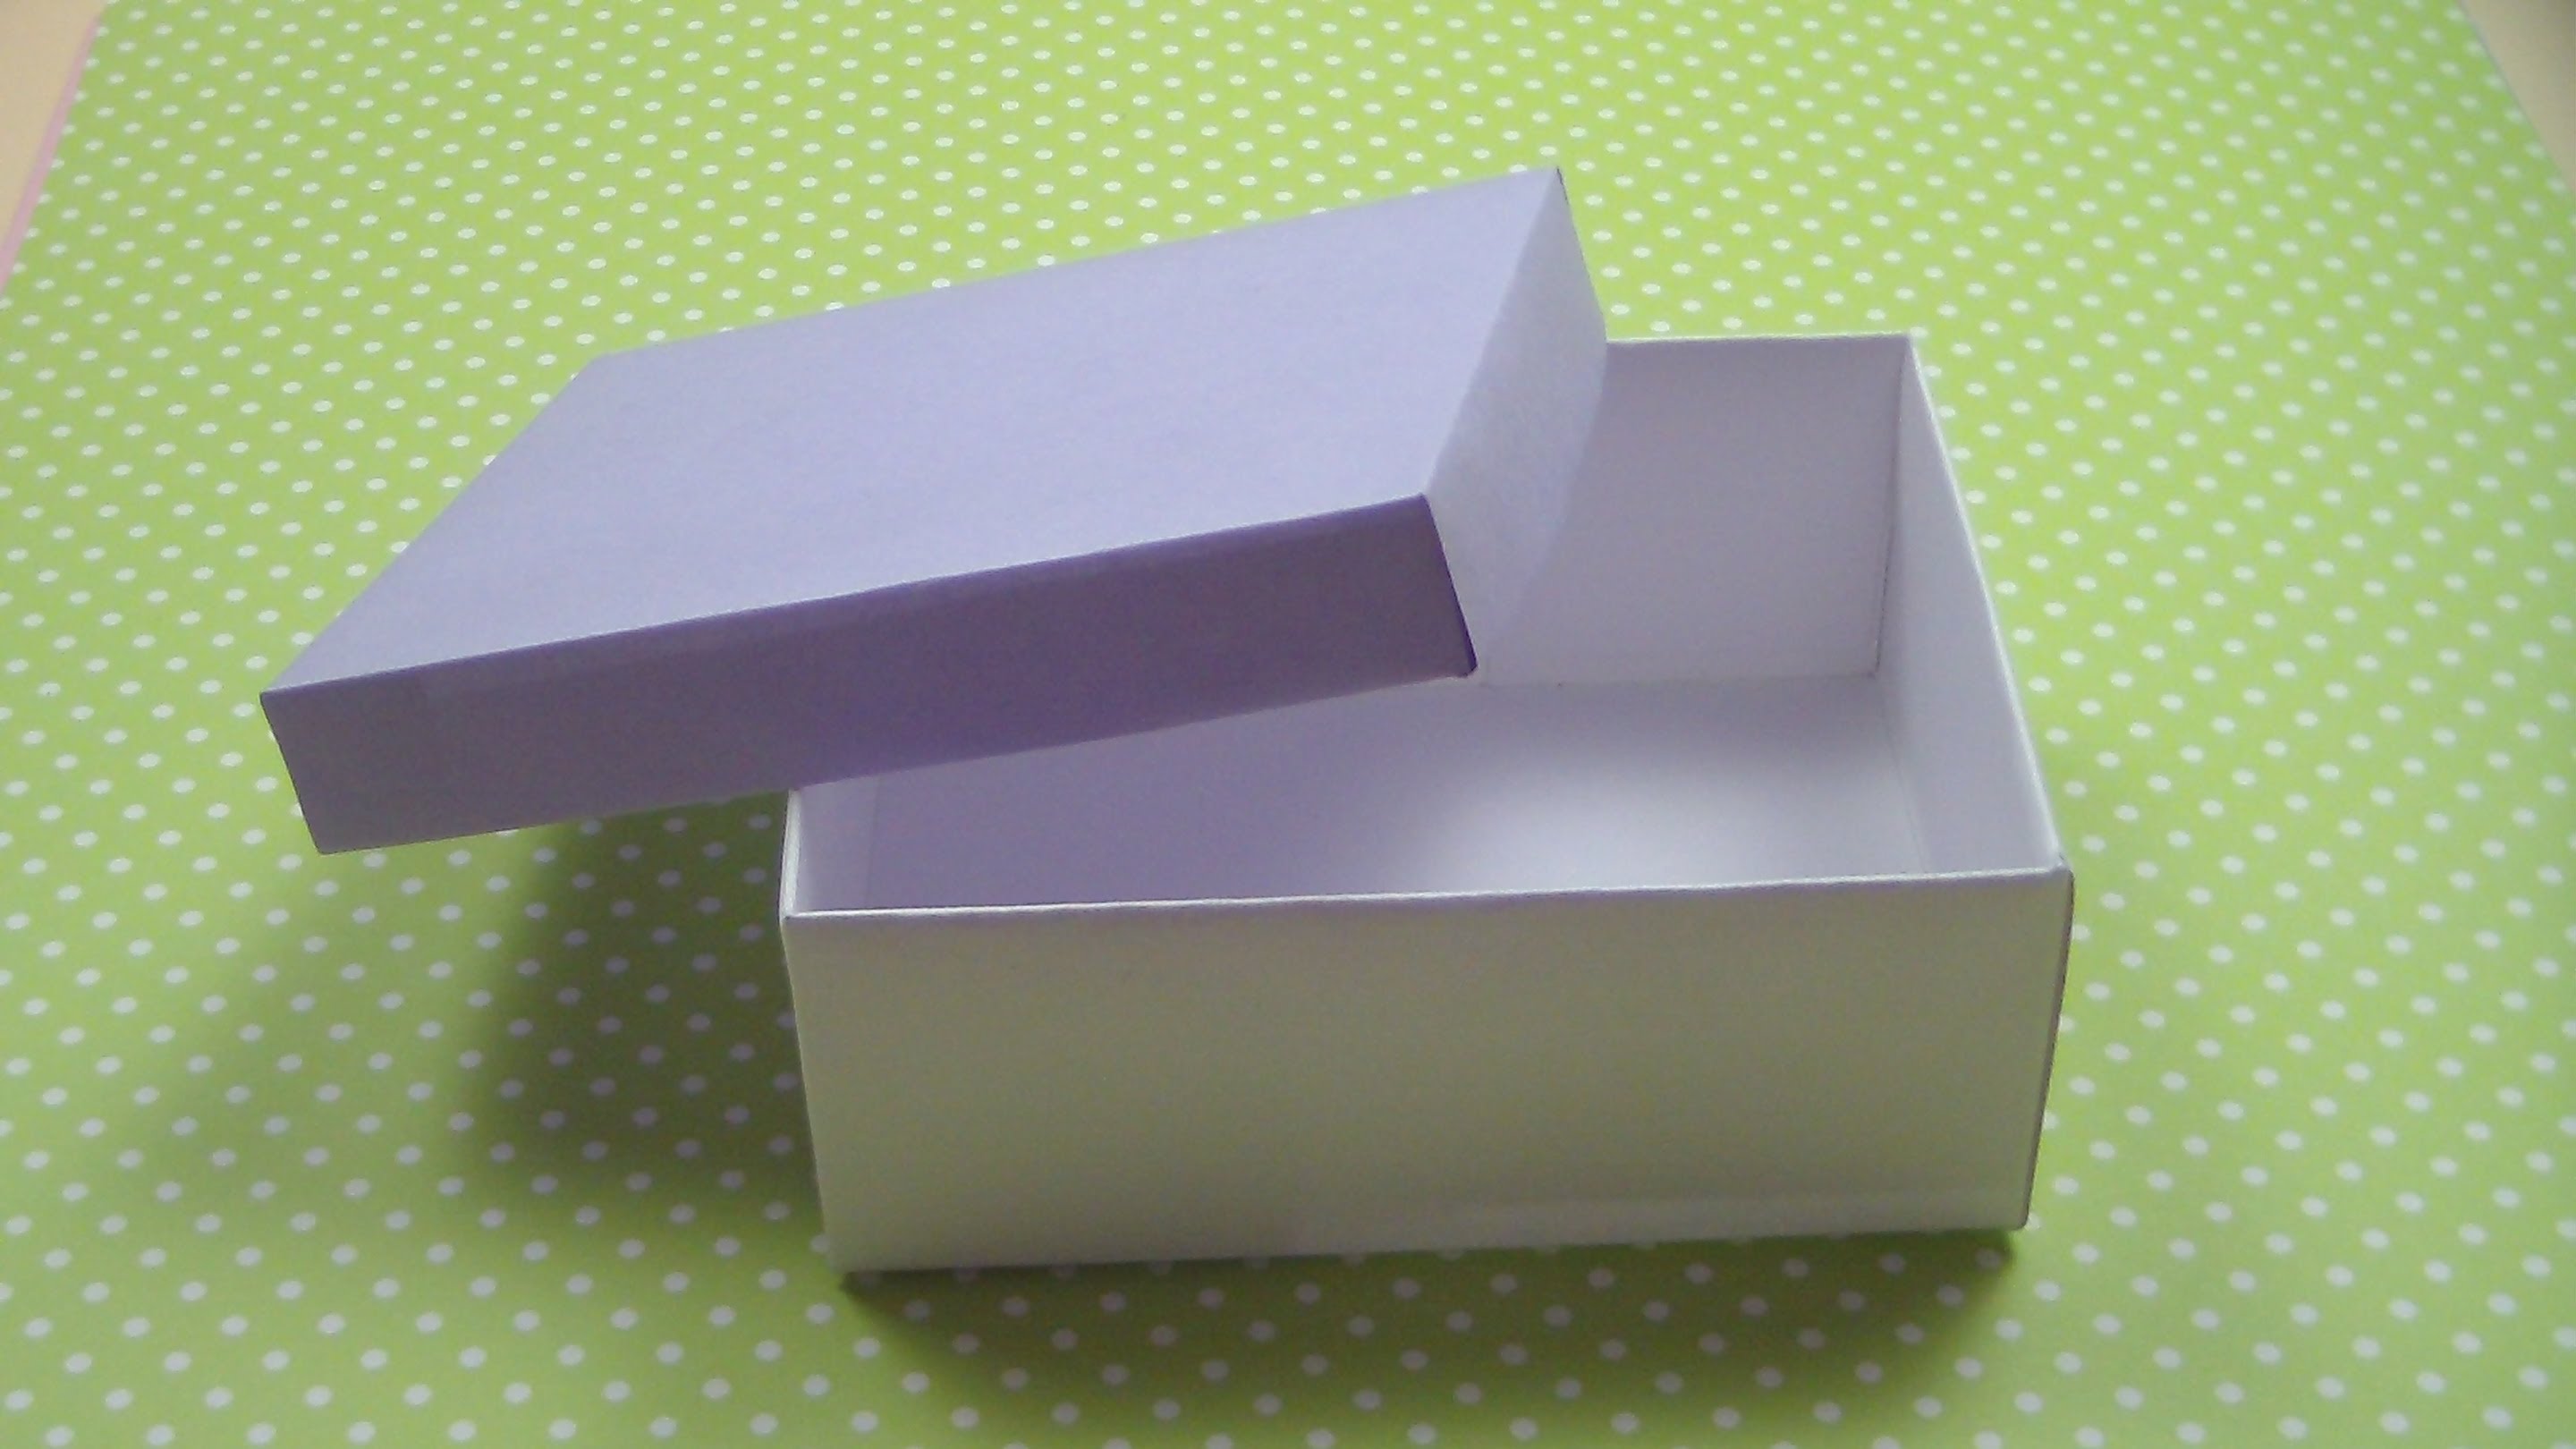 Открой коробку 5. Бумажная коробочка с крышкой. Крышка для бумажной коробки. Коробка с крышкой из картона. Коробочка из бумаги с крышкой.